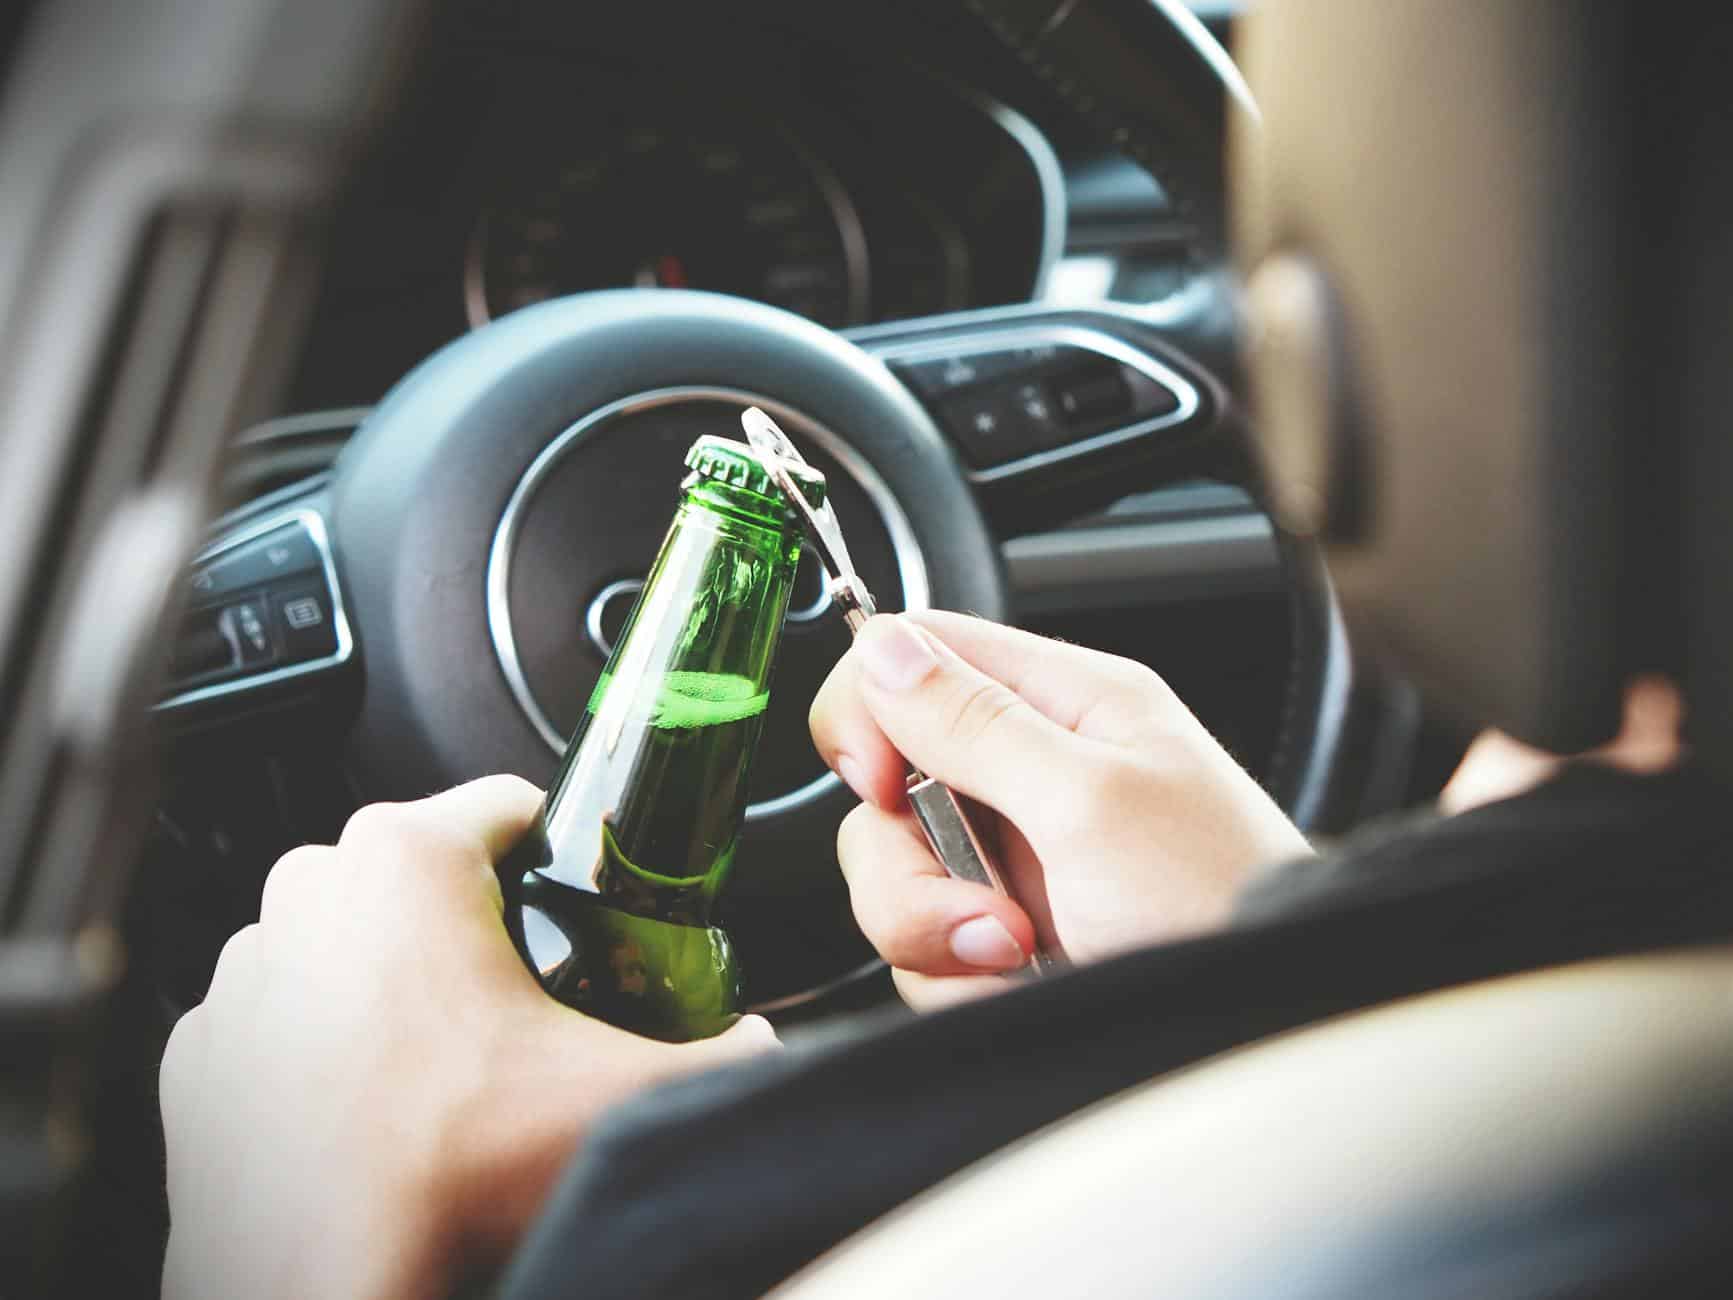 瑞士有4%的司机在酒精影响下开车